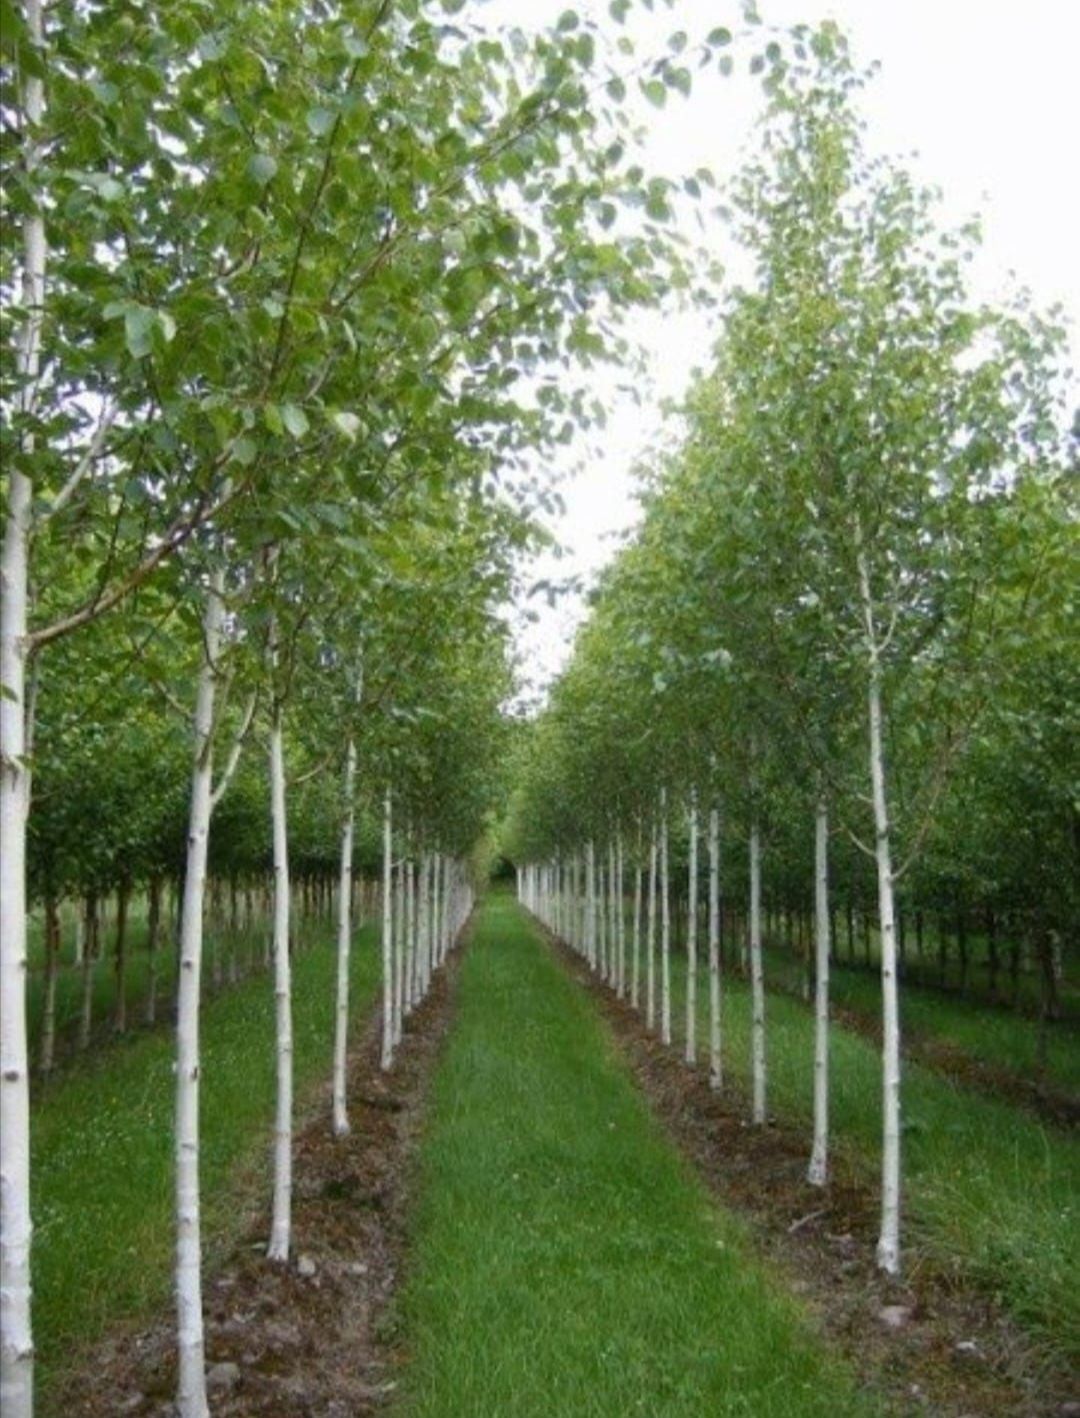 Arborii ornamentali (copacii foiosi)